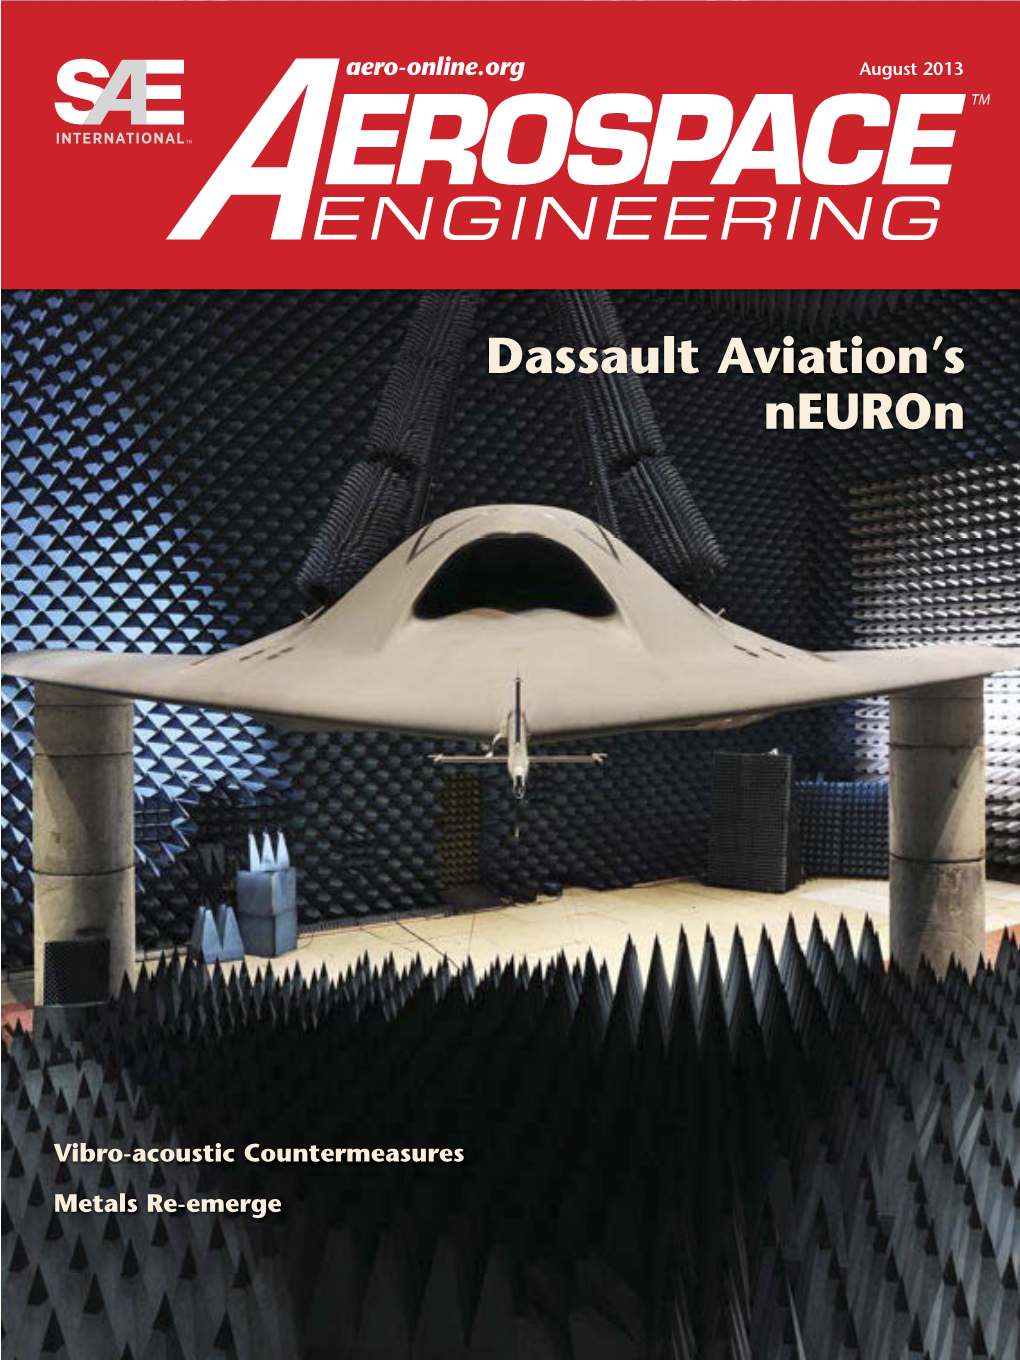 Dassault Aviation's Neuron